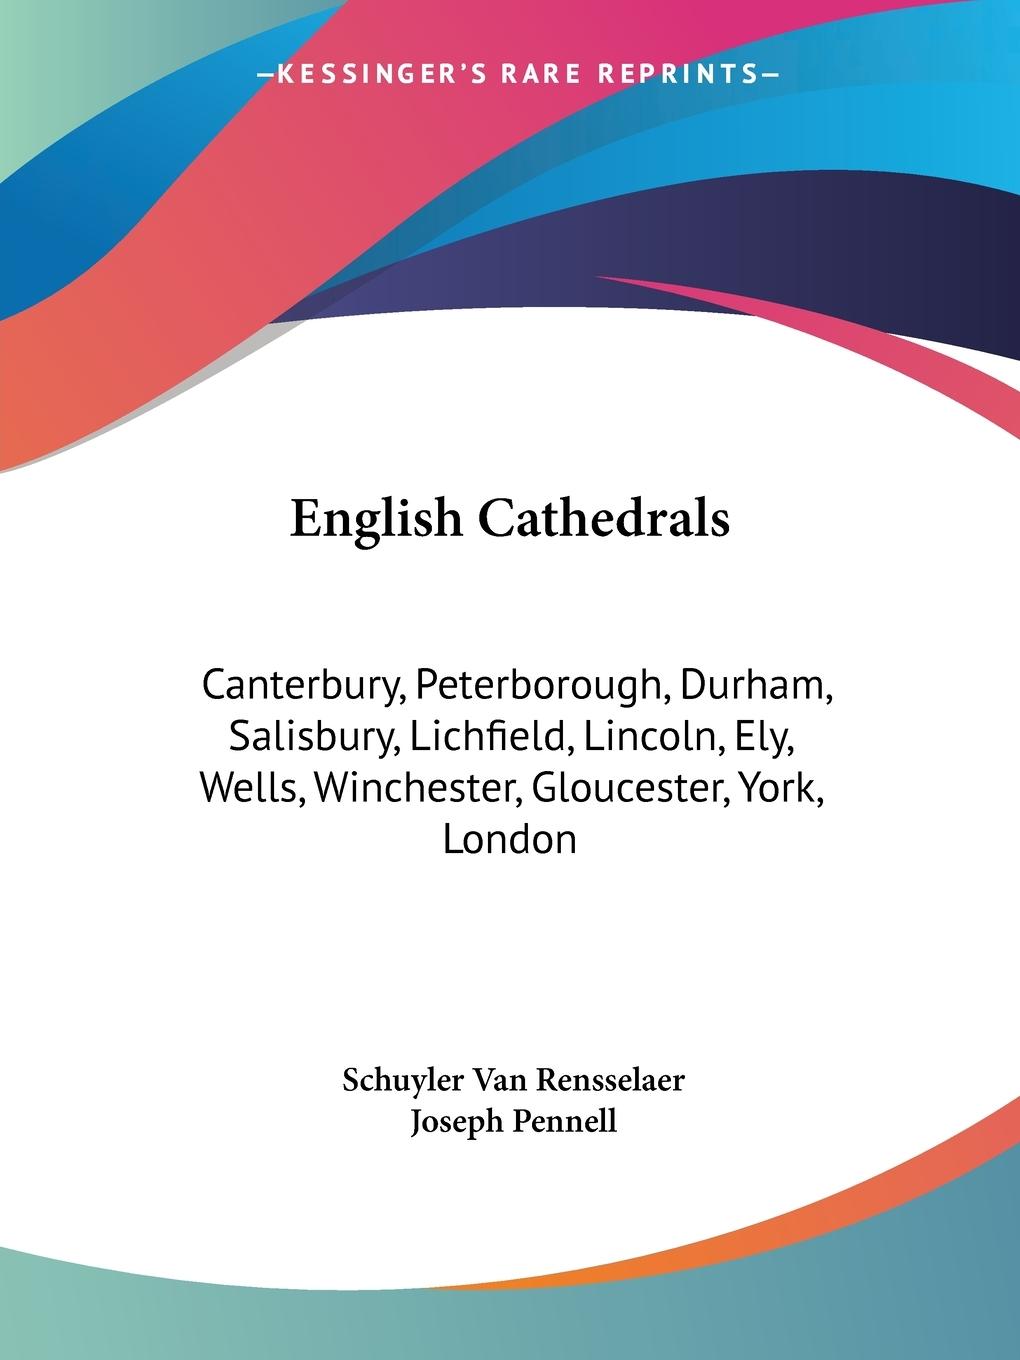 English Cathedrals - Rensselaer, Schuyler Van